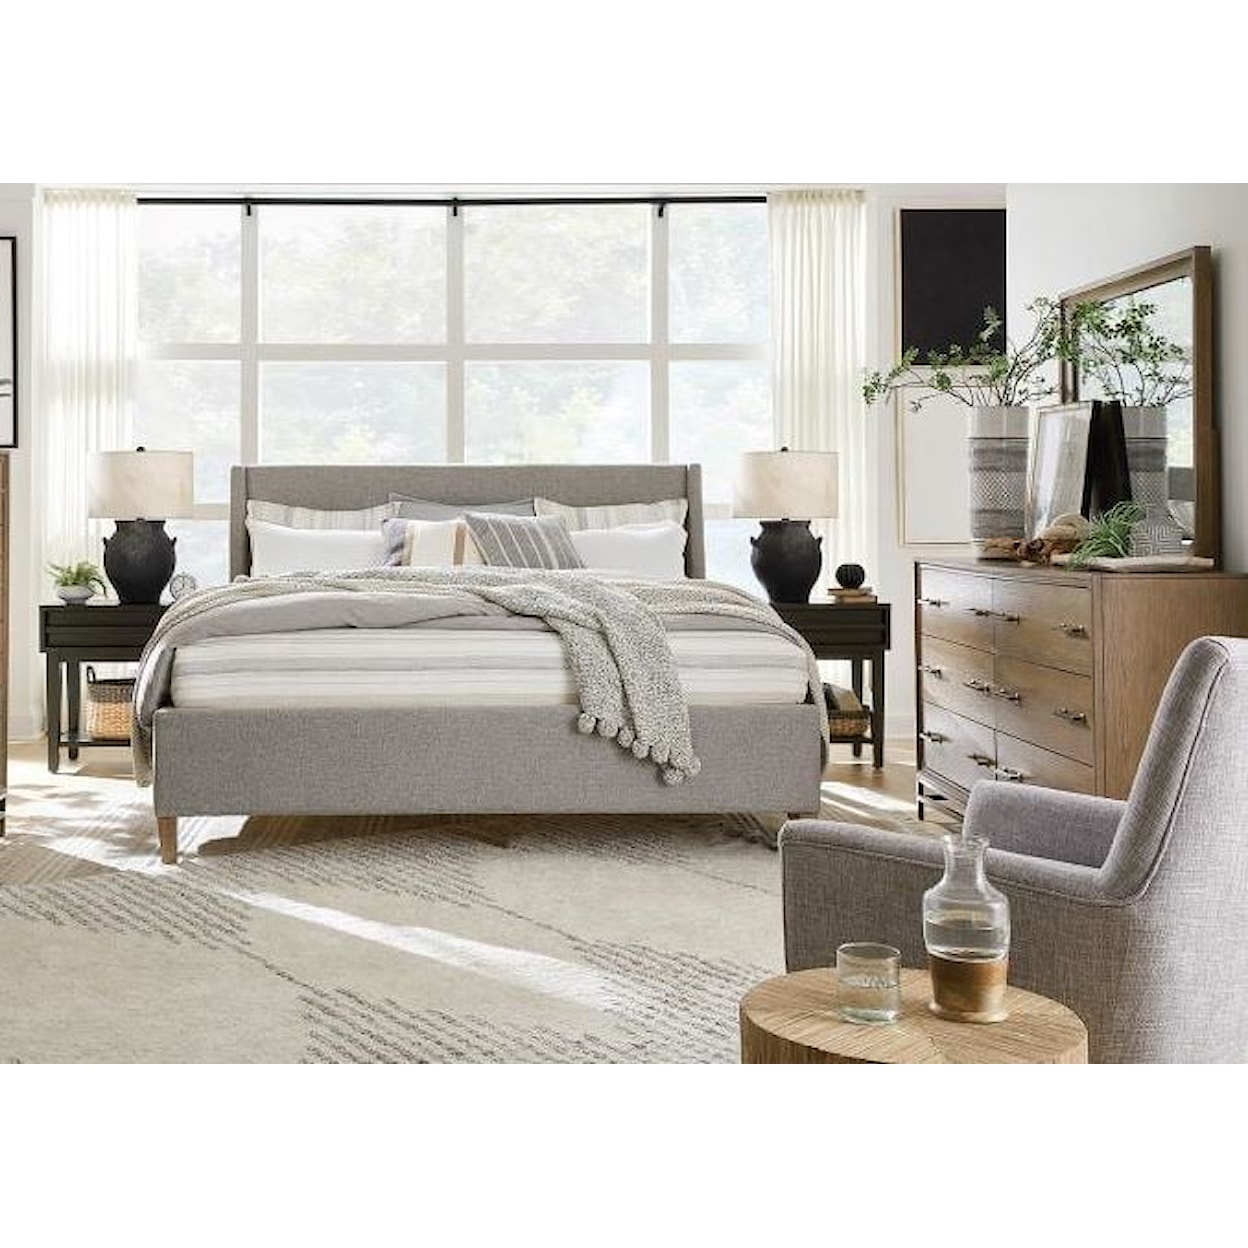 Magnussen Home Lindon Bedroom King Grey Upholstered Island Bed